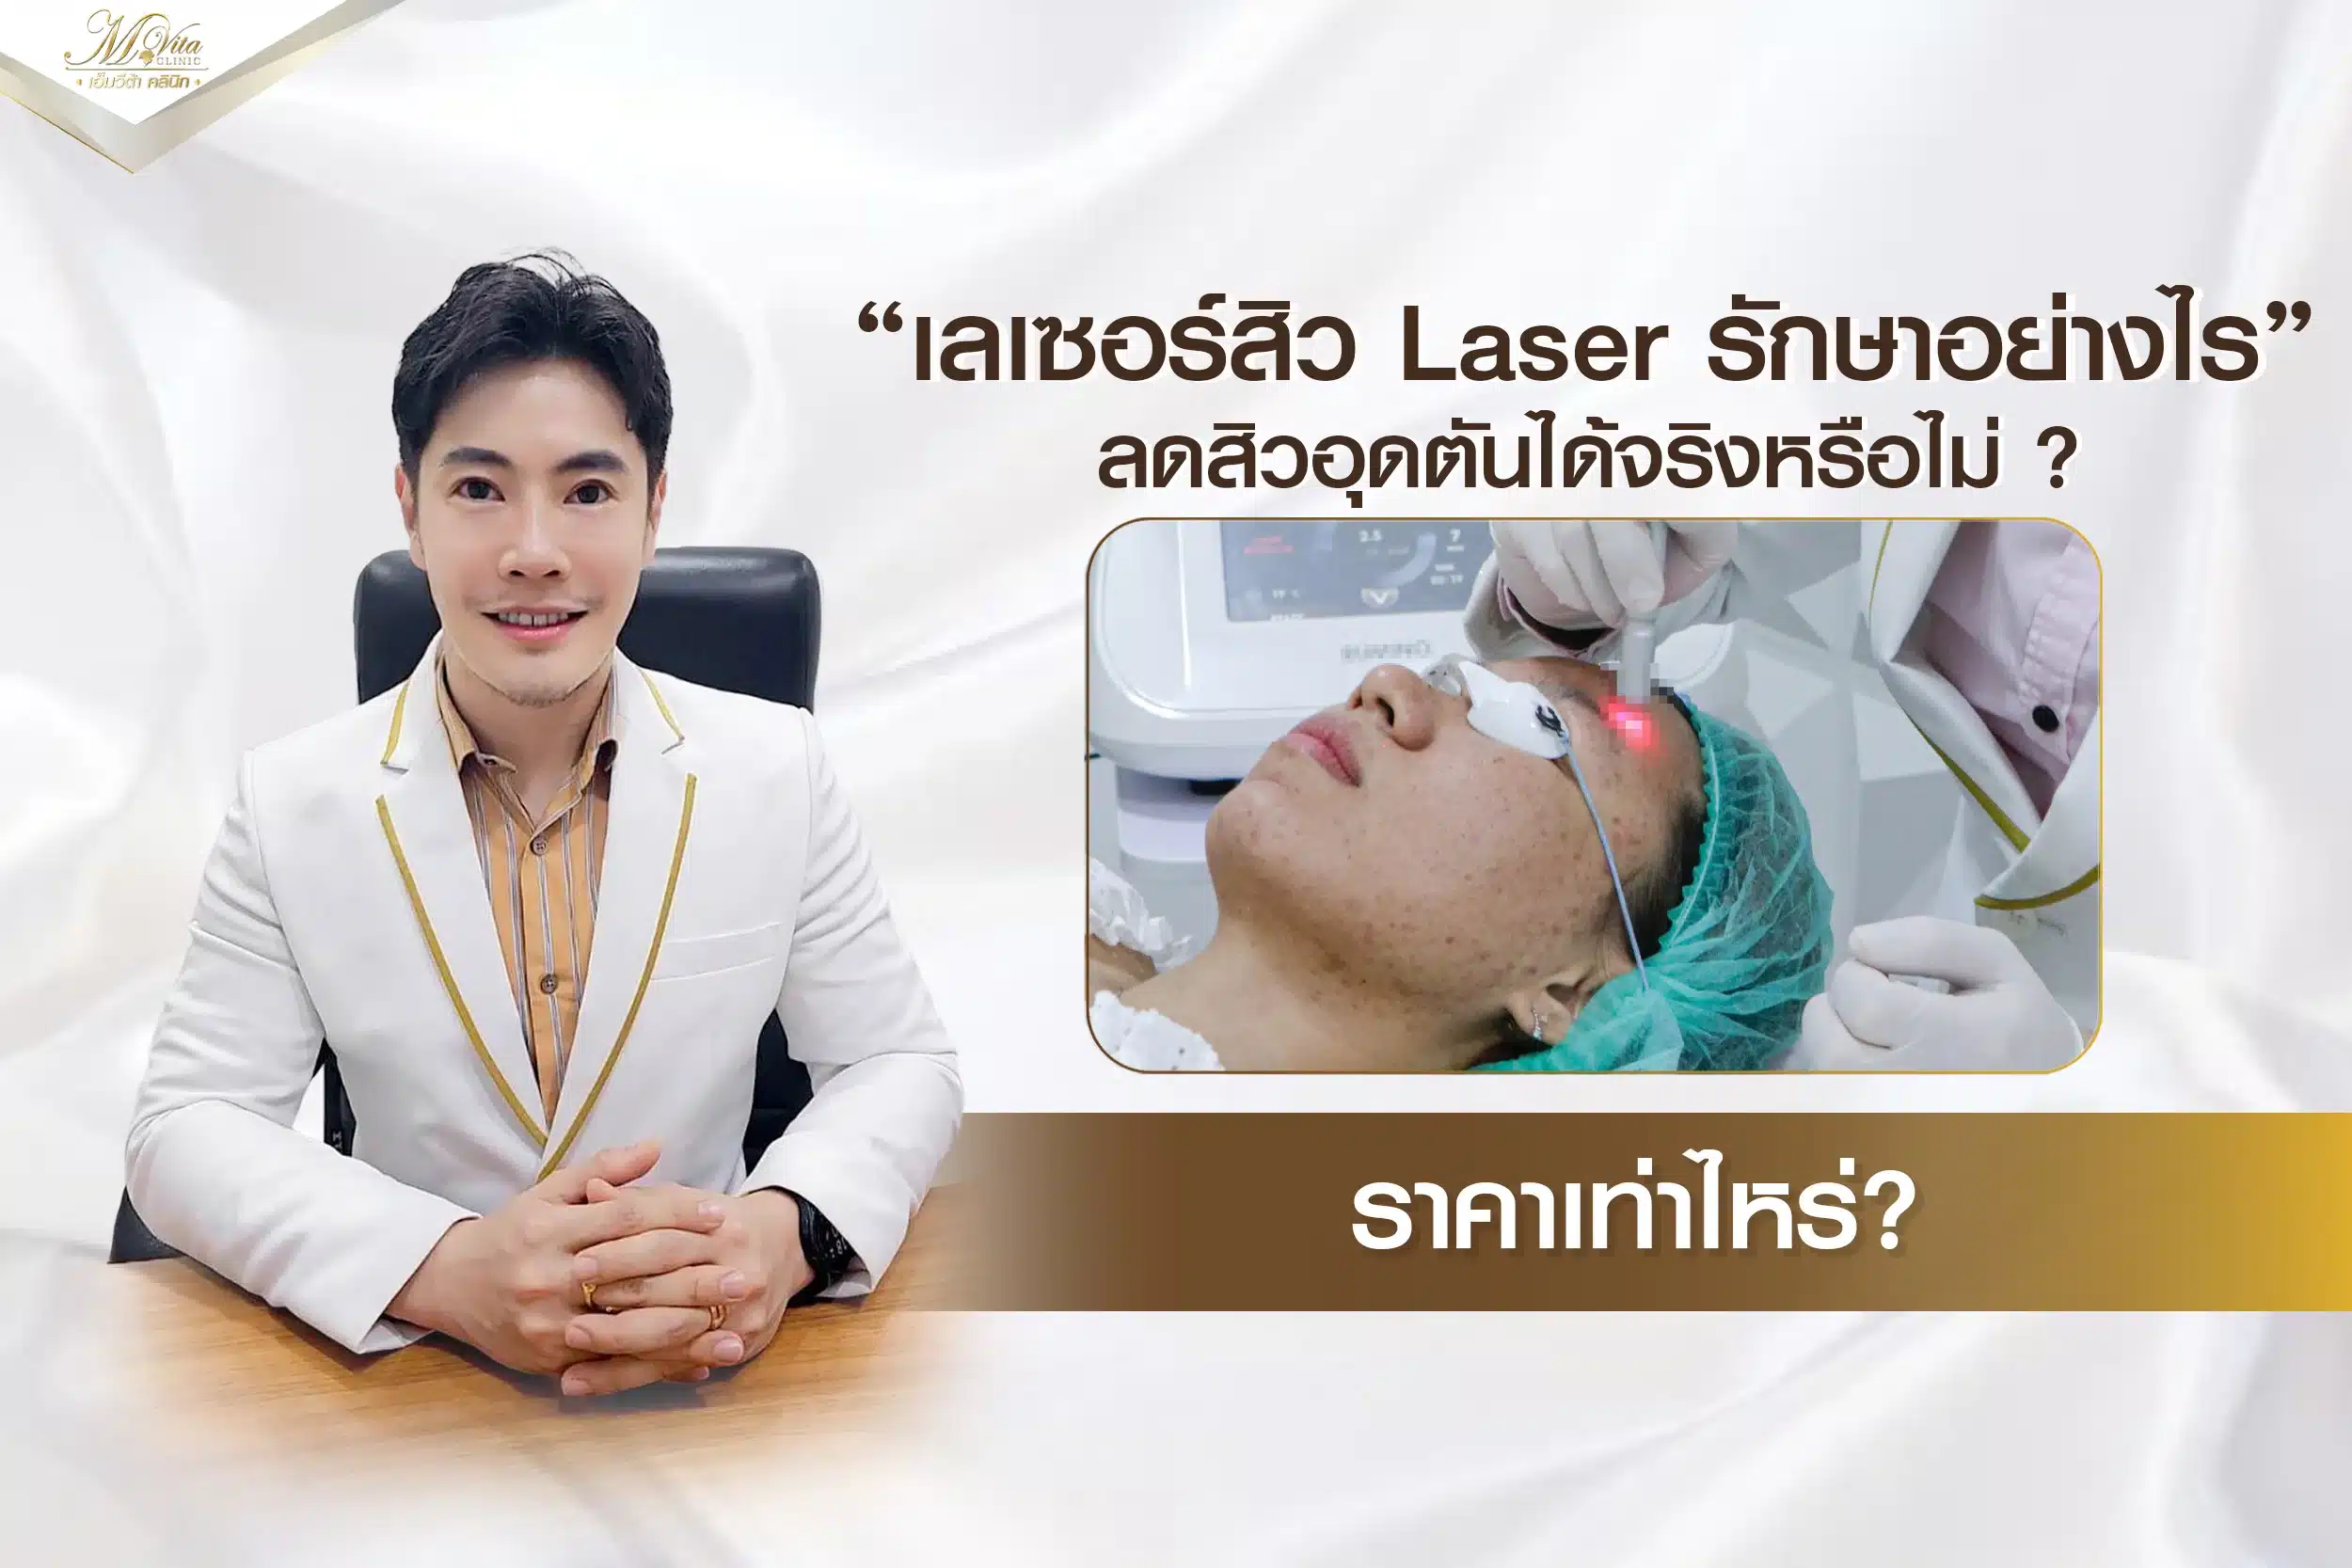 เลเซอร์สิวอุดตัน Laser รักษาอย่างไร ลดสิวอุดตันได้จริงหรือไม่ ราคาเท่าไหร่?